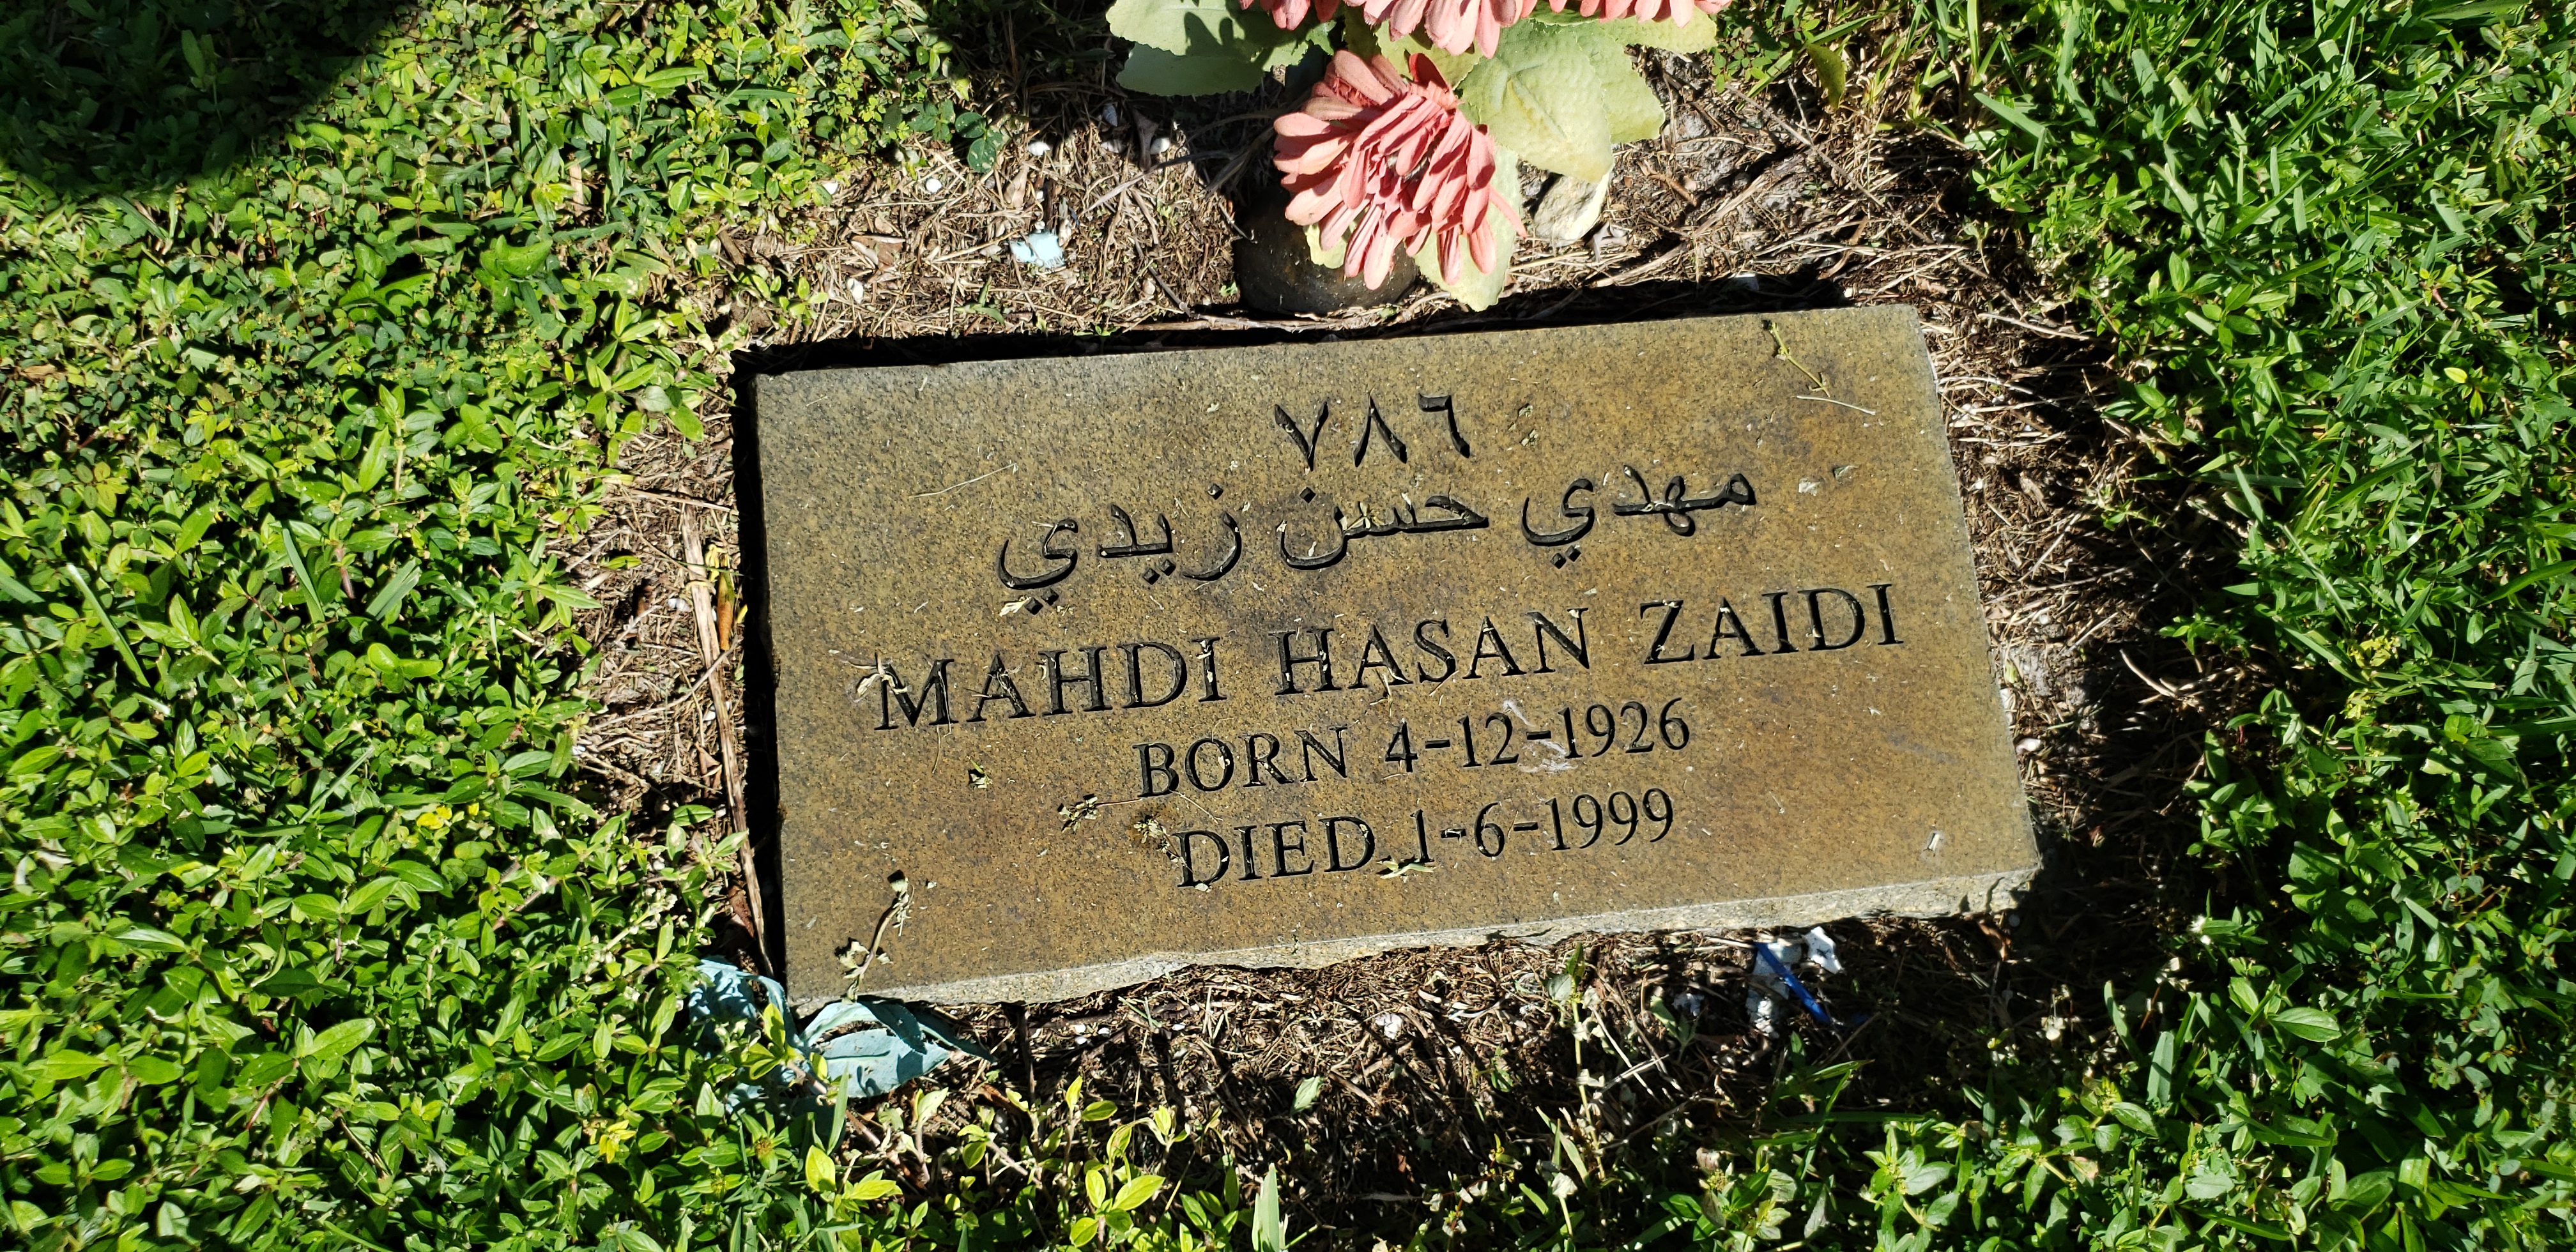 Mahdi Hasan Zaidi